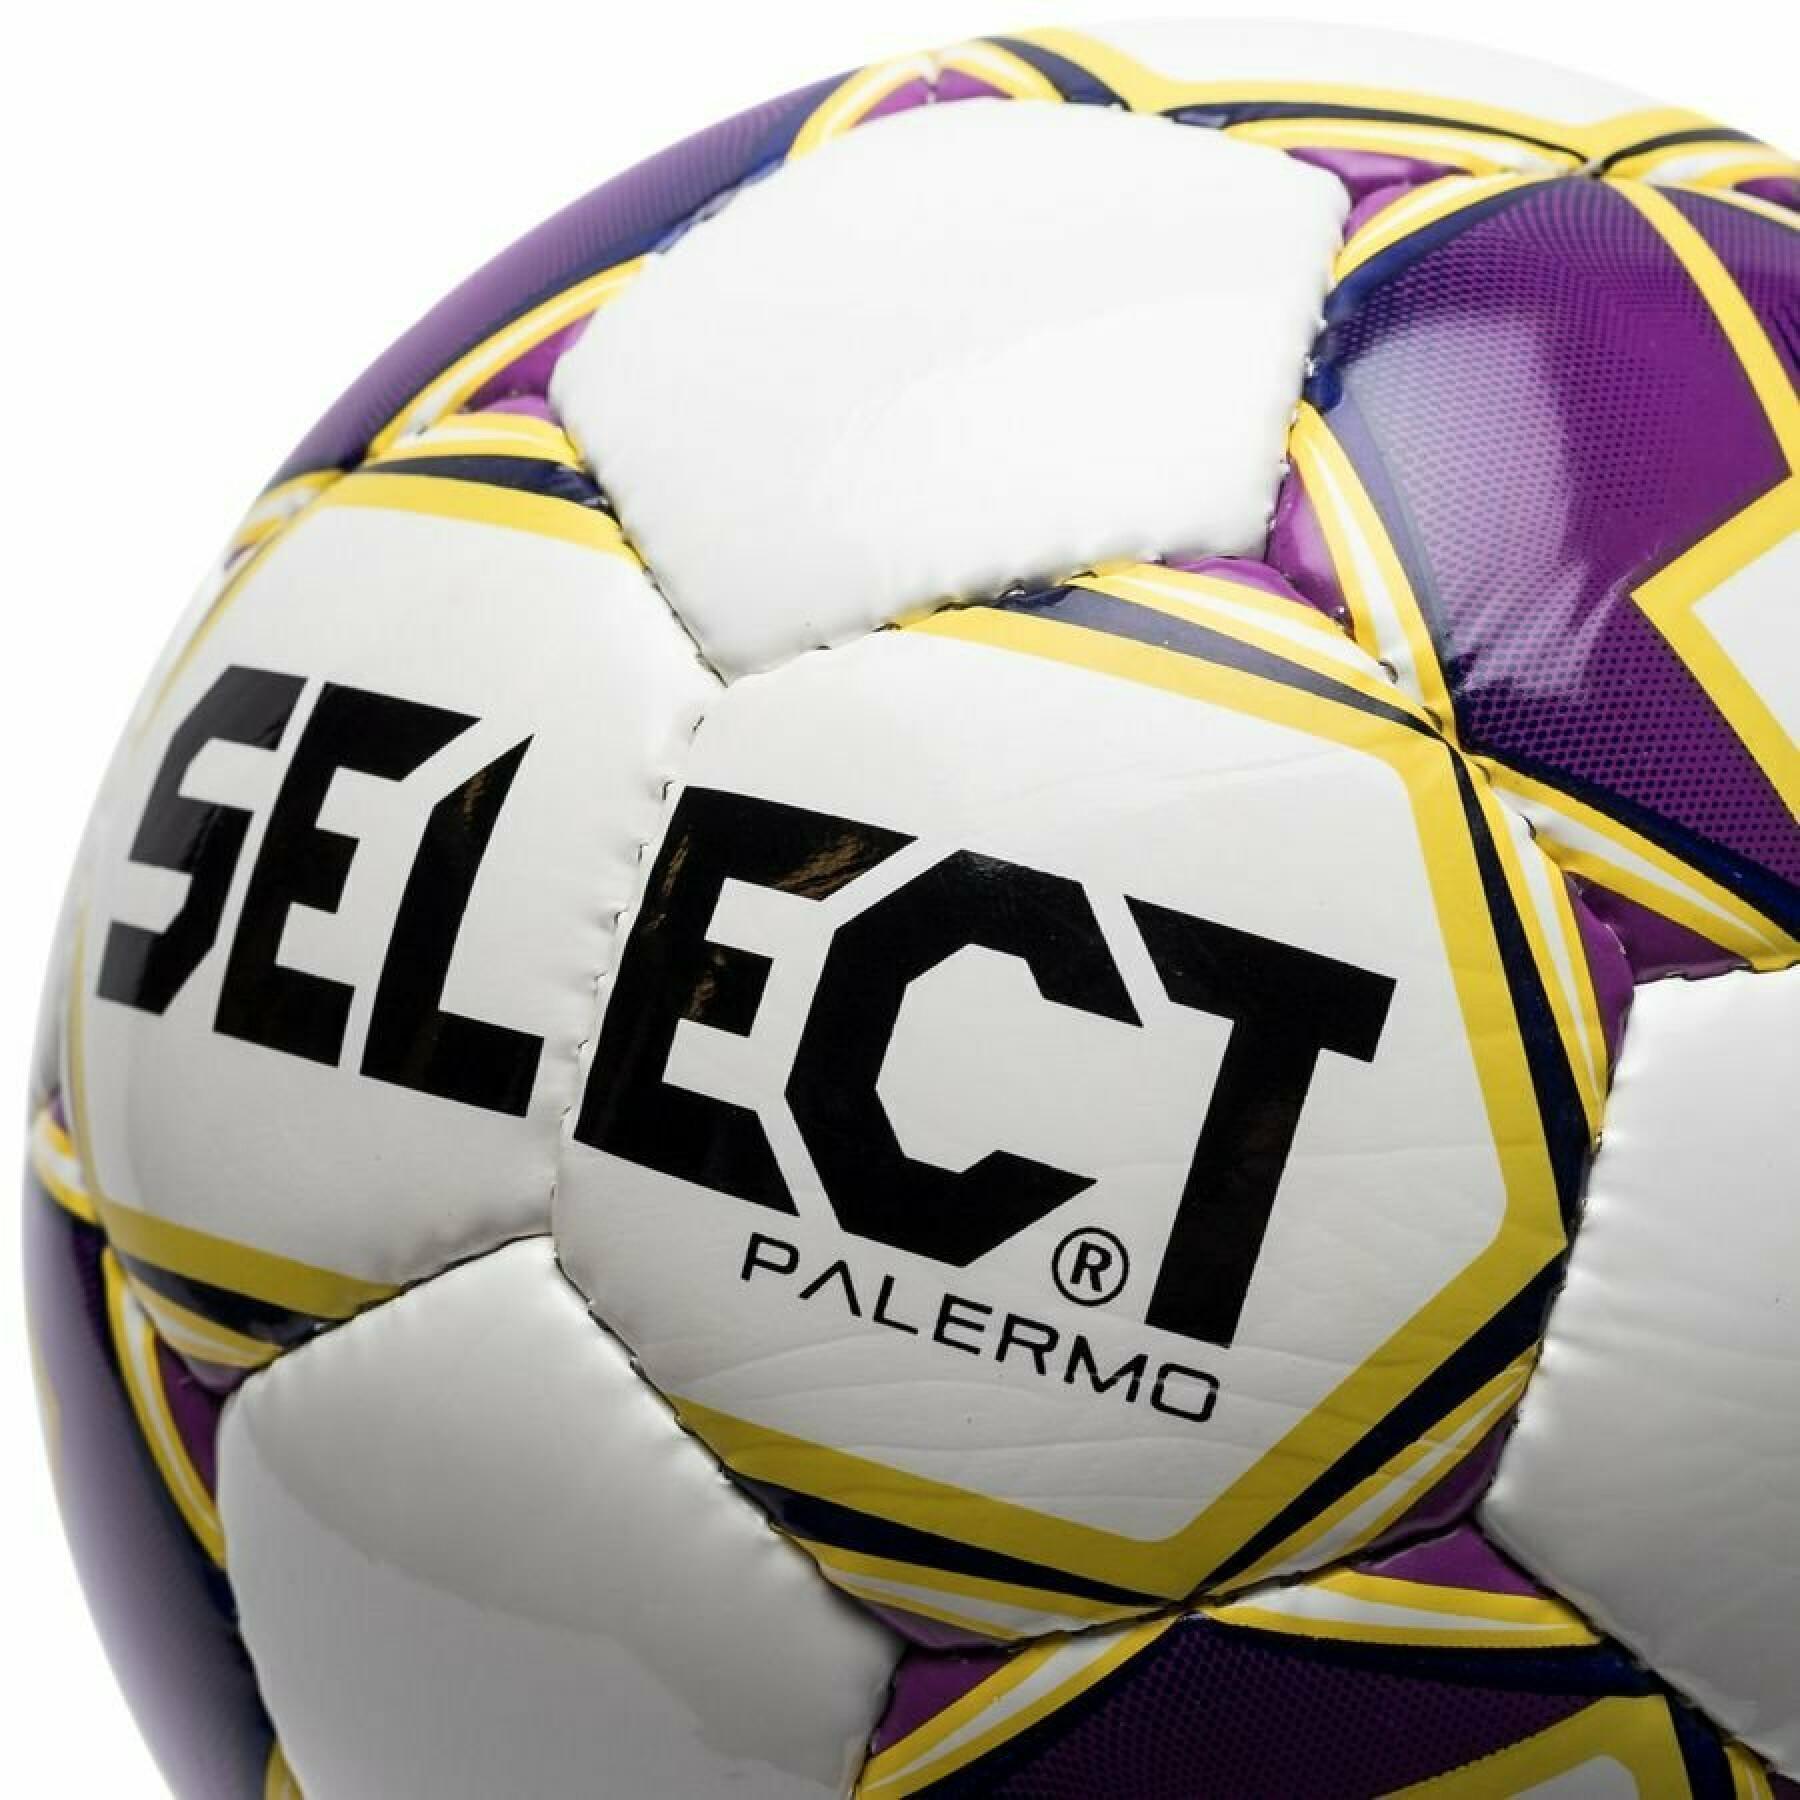 Ballon Select Palermo